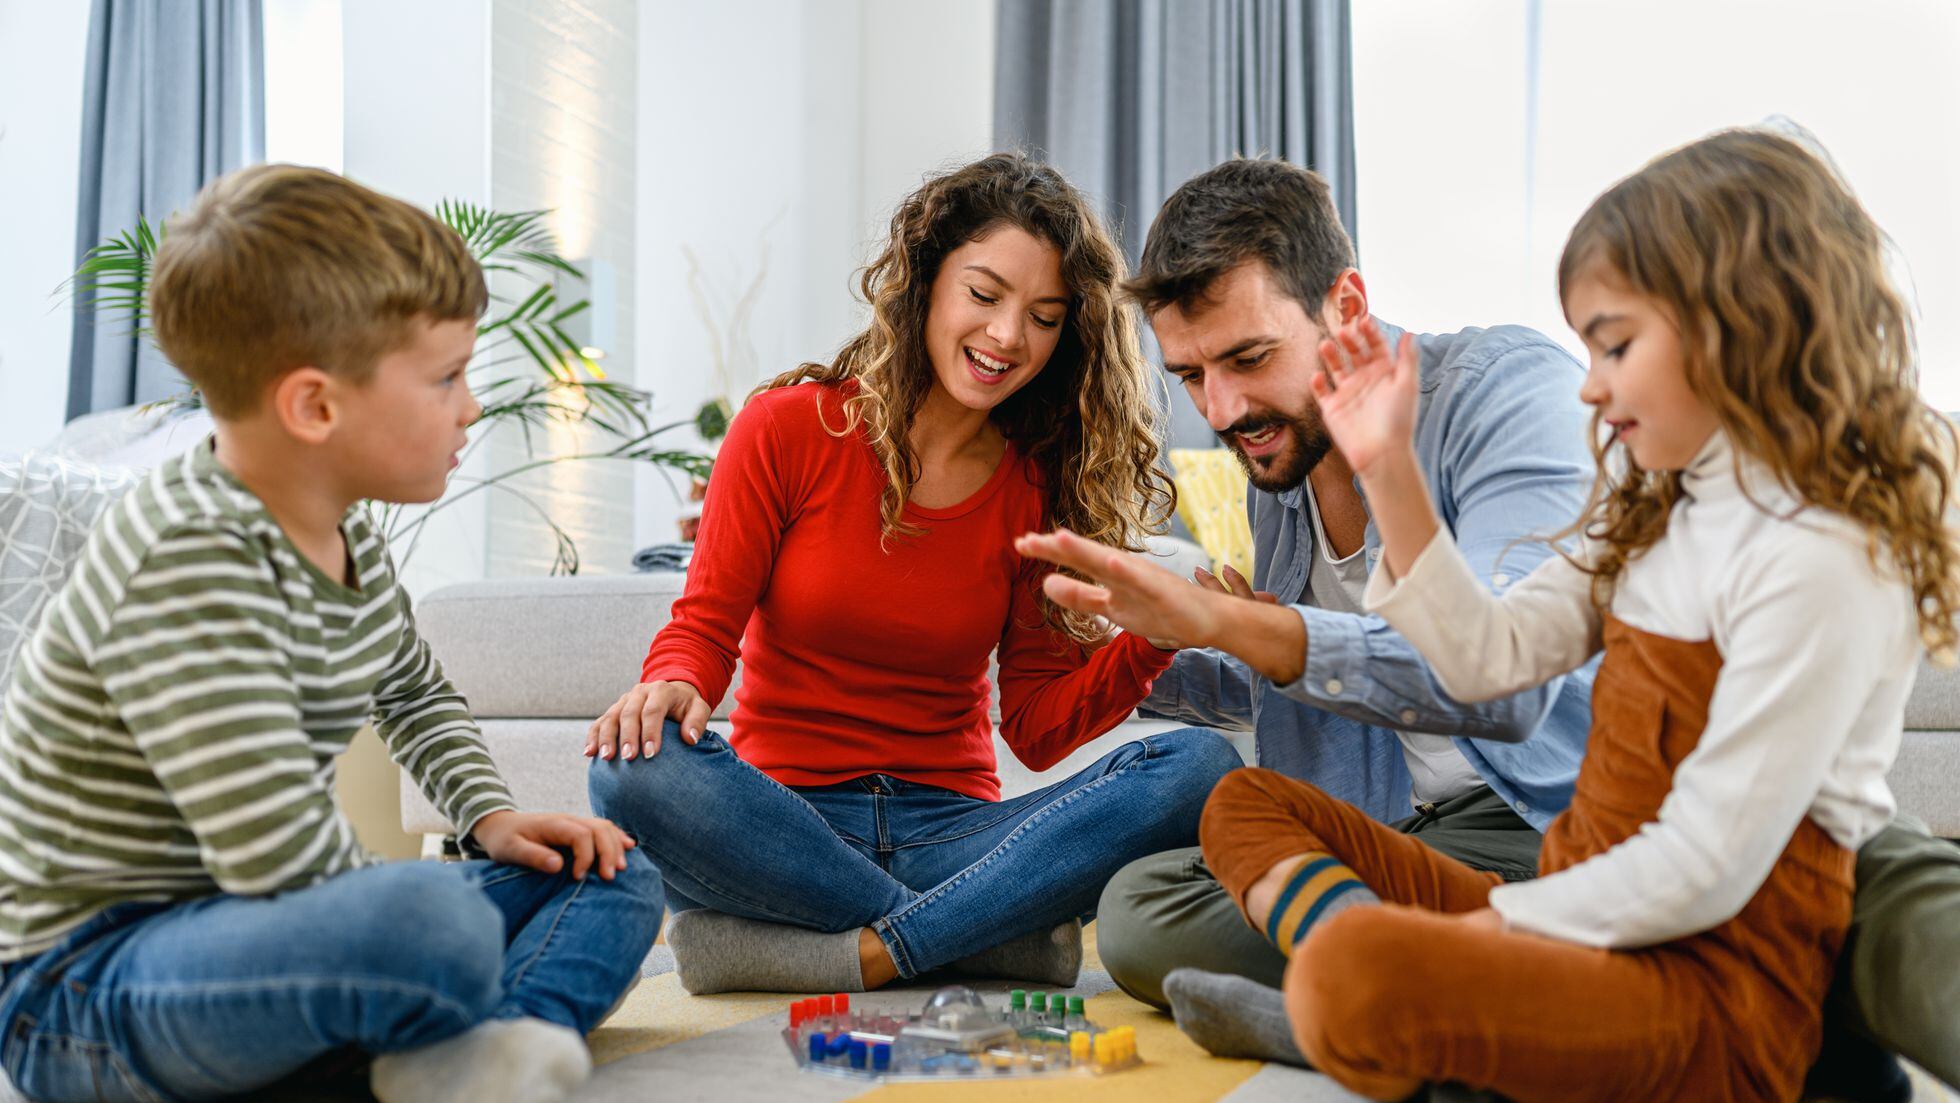 35 Juegos para jugar en familia en casa - ¡Divertidos y didácticos!